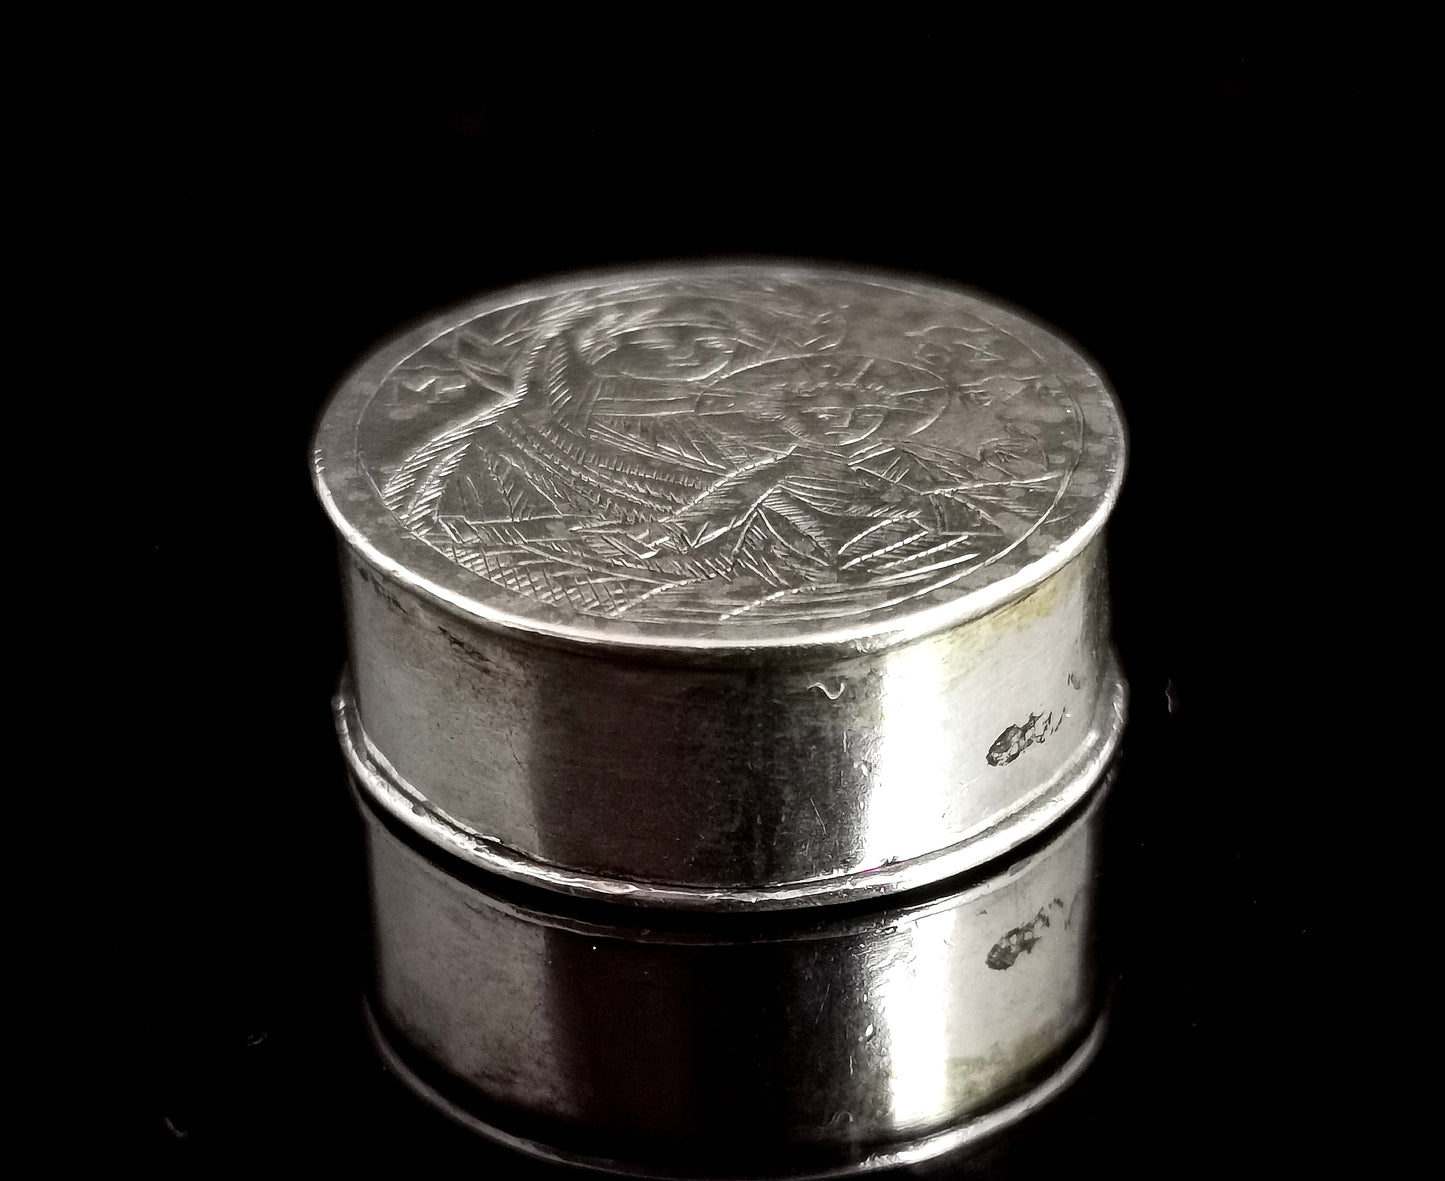 Antique silver reliquary locket pendant, INRI, mourning